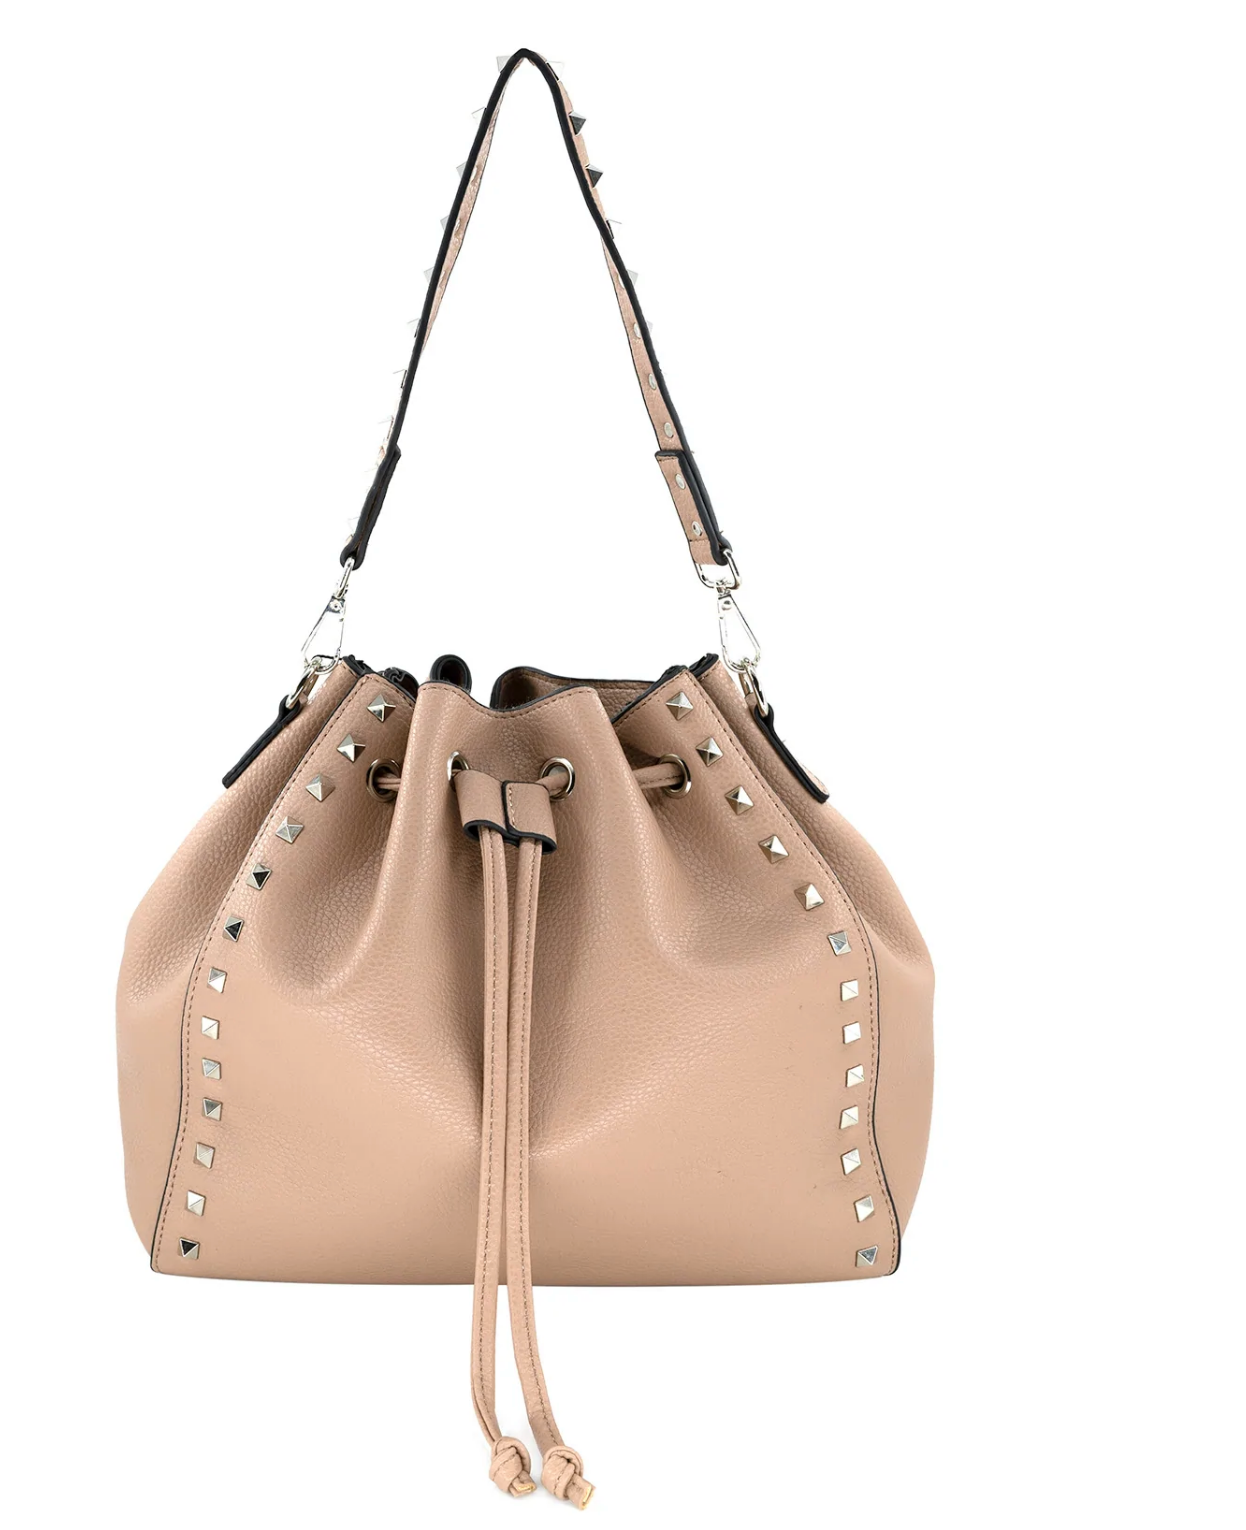 Studded Handbag Valentino inspired handbag crossbody handbag studded purse